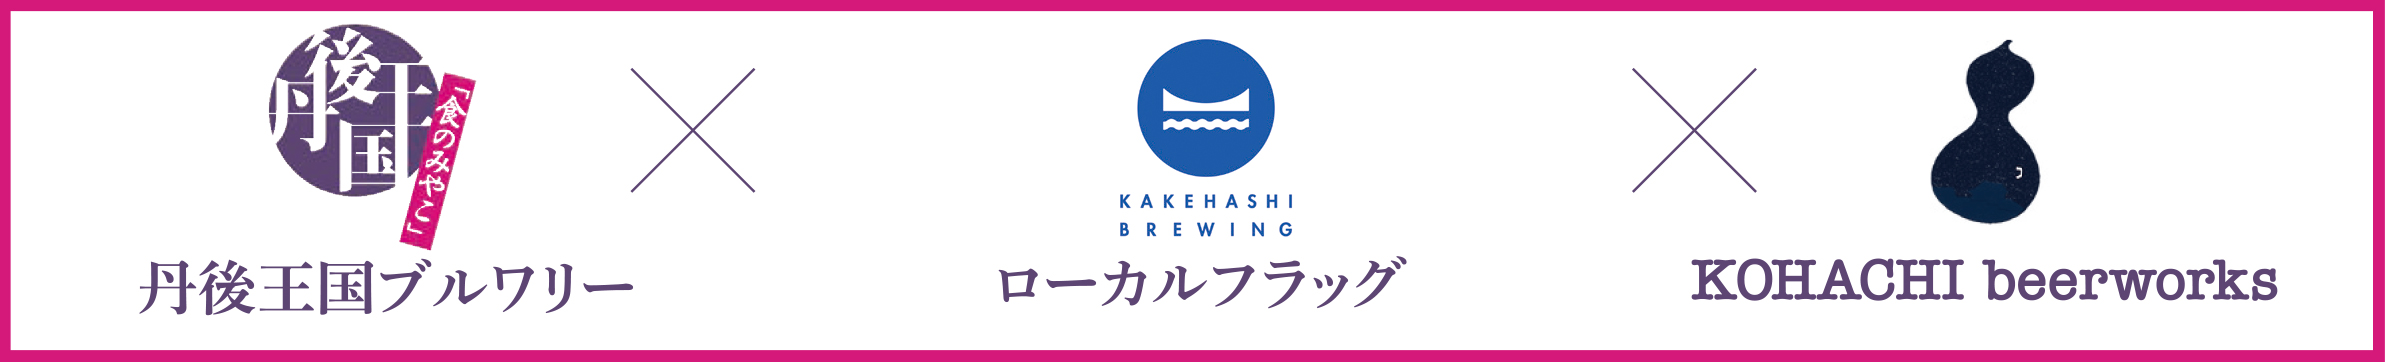 クラフトビール3社ロゴ